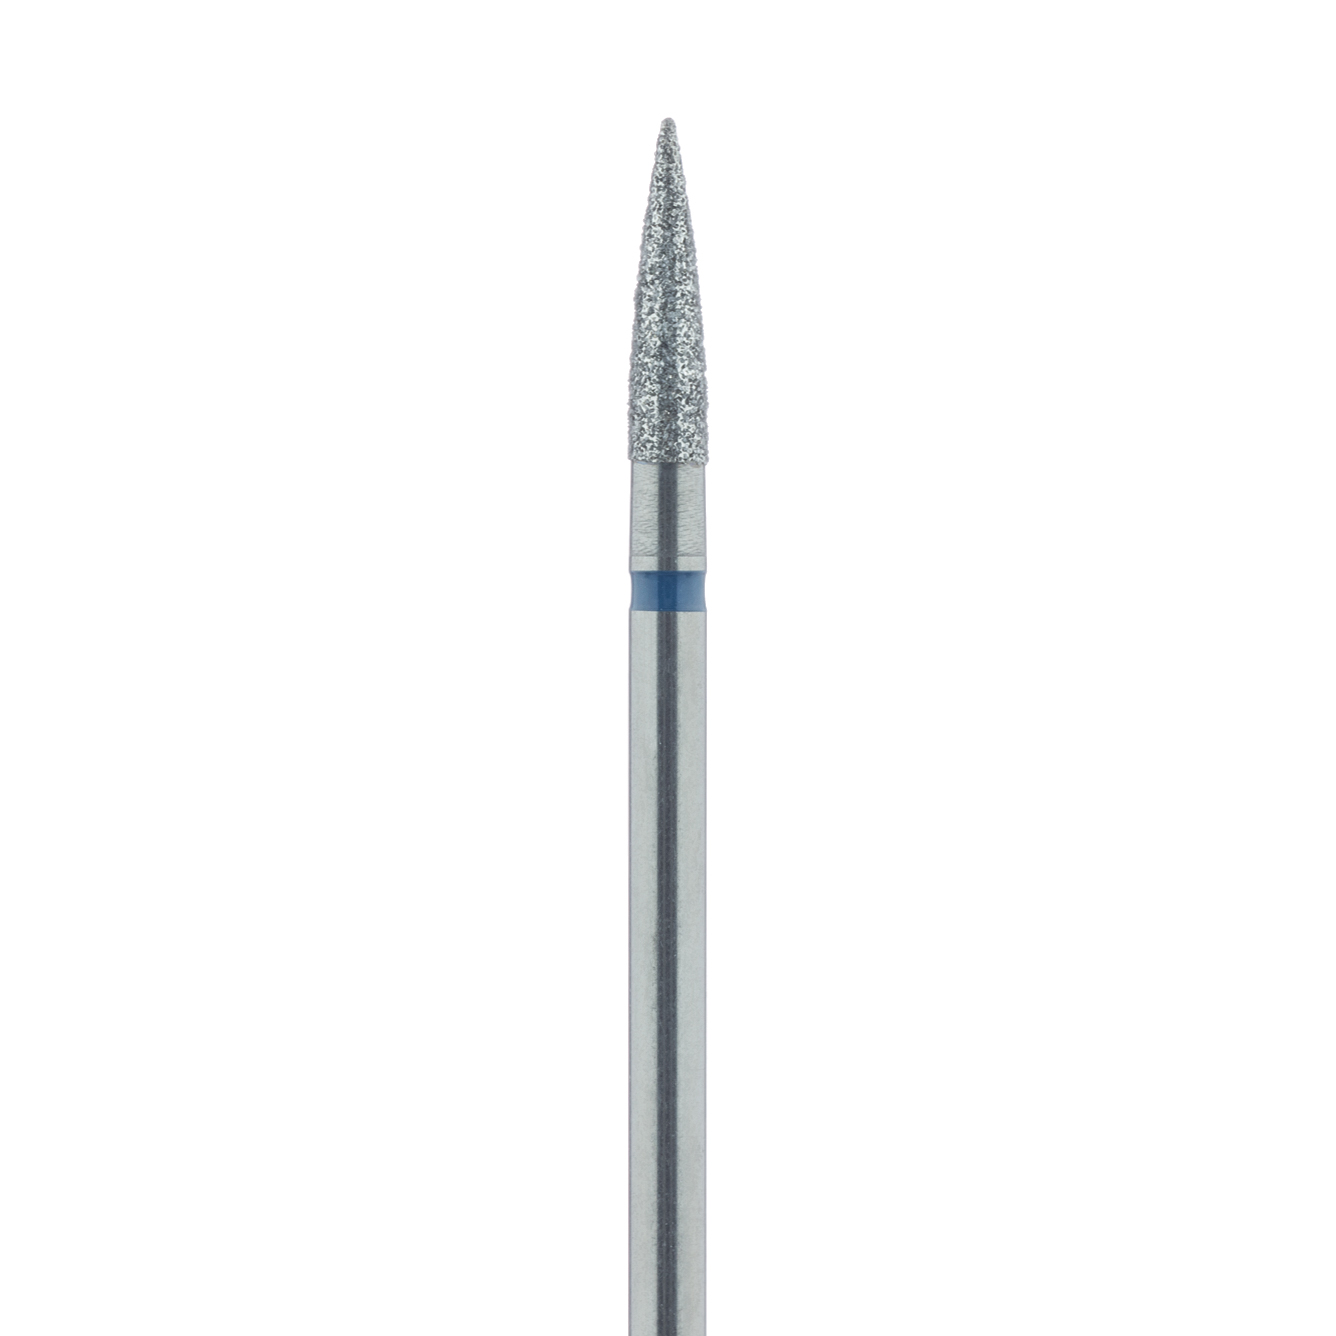 863-025-HP Long Flame Diamond Bur, 2.5mm Medium HP